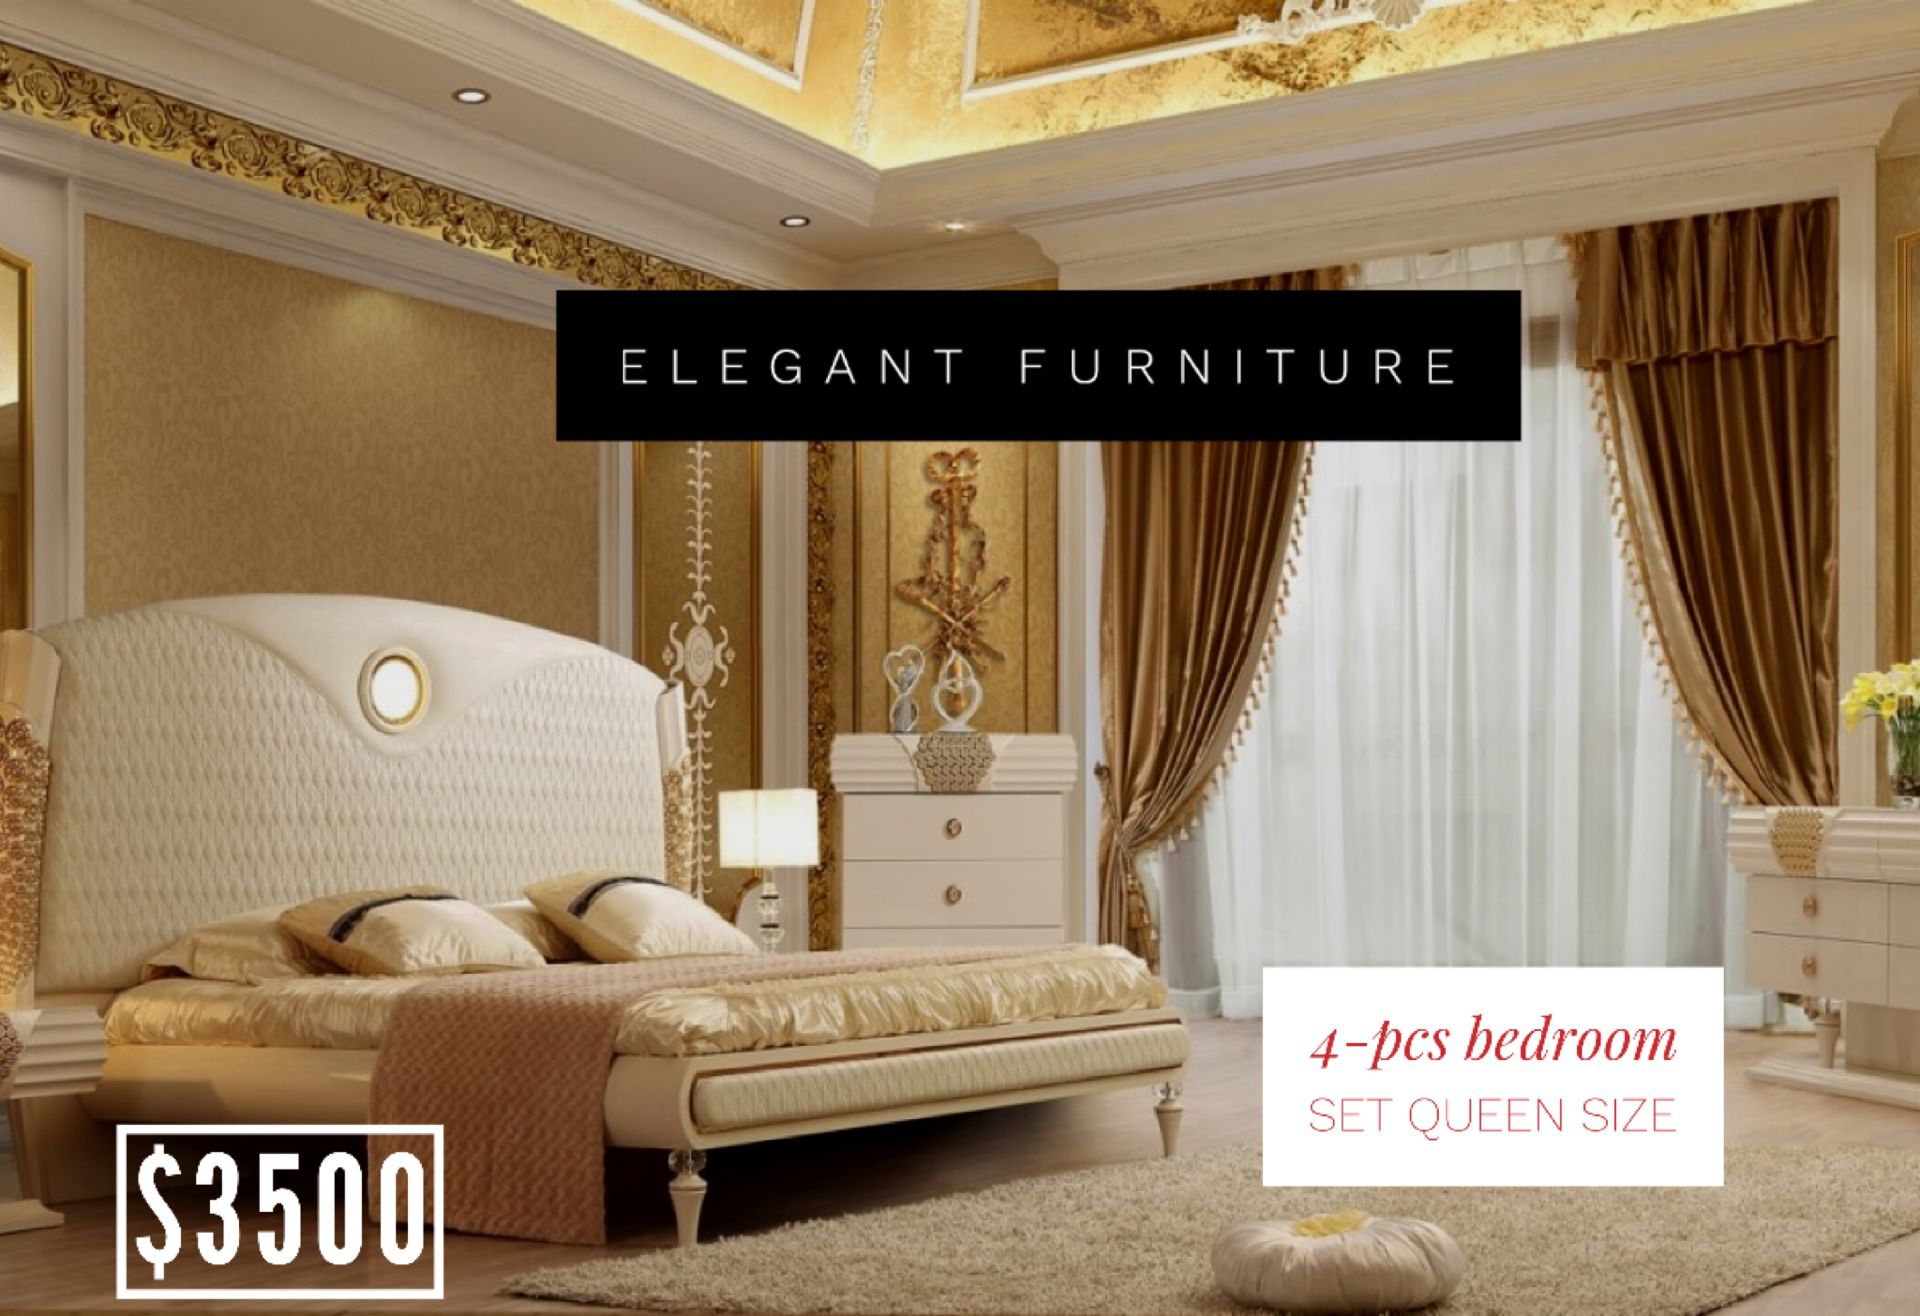 Queen Size Bedroom Set 4pc- Recamara Queen Size de 4pc @Elegant Furniture